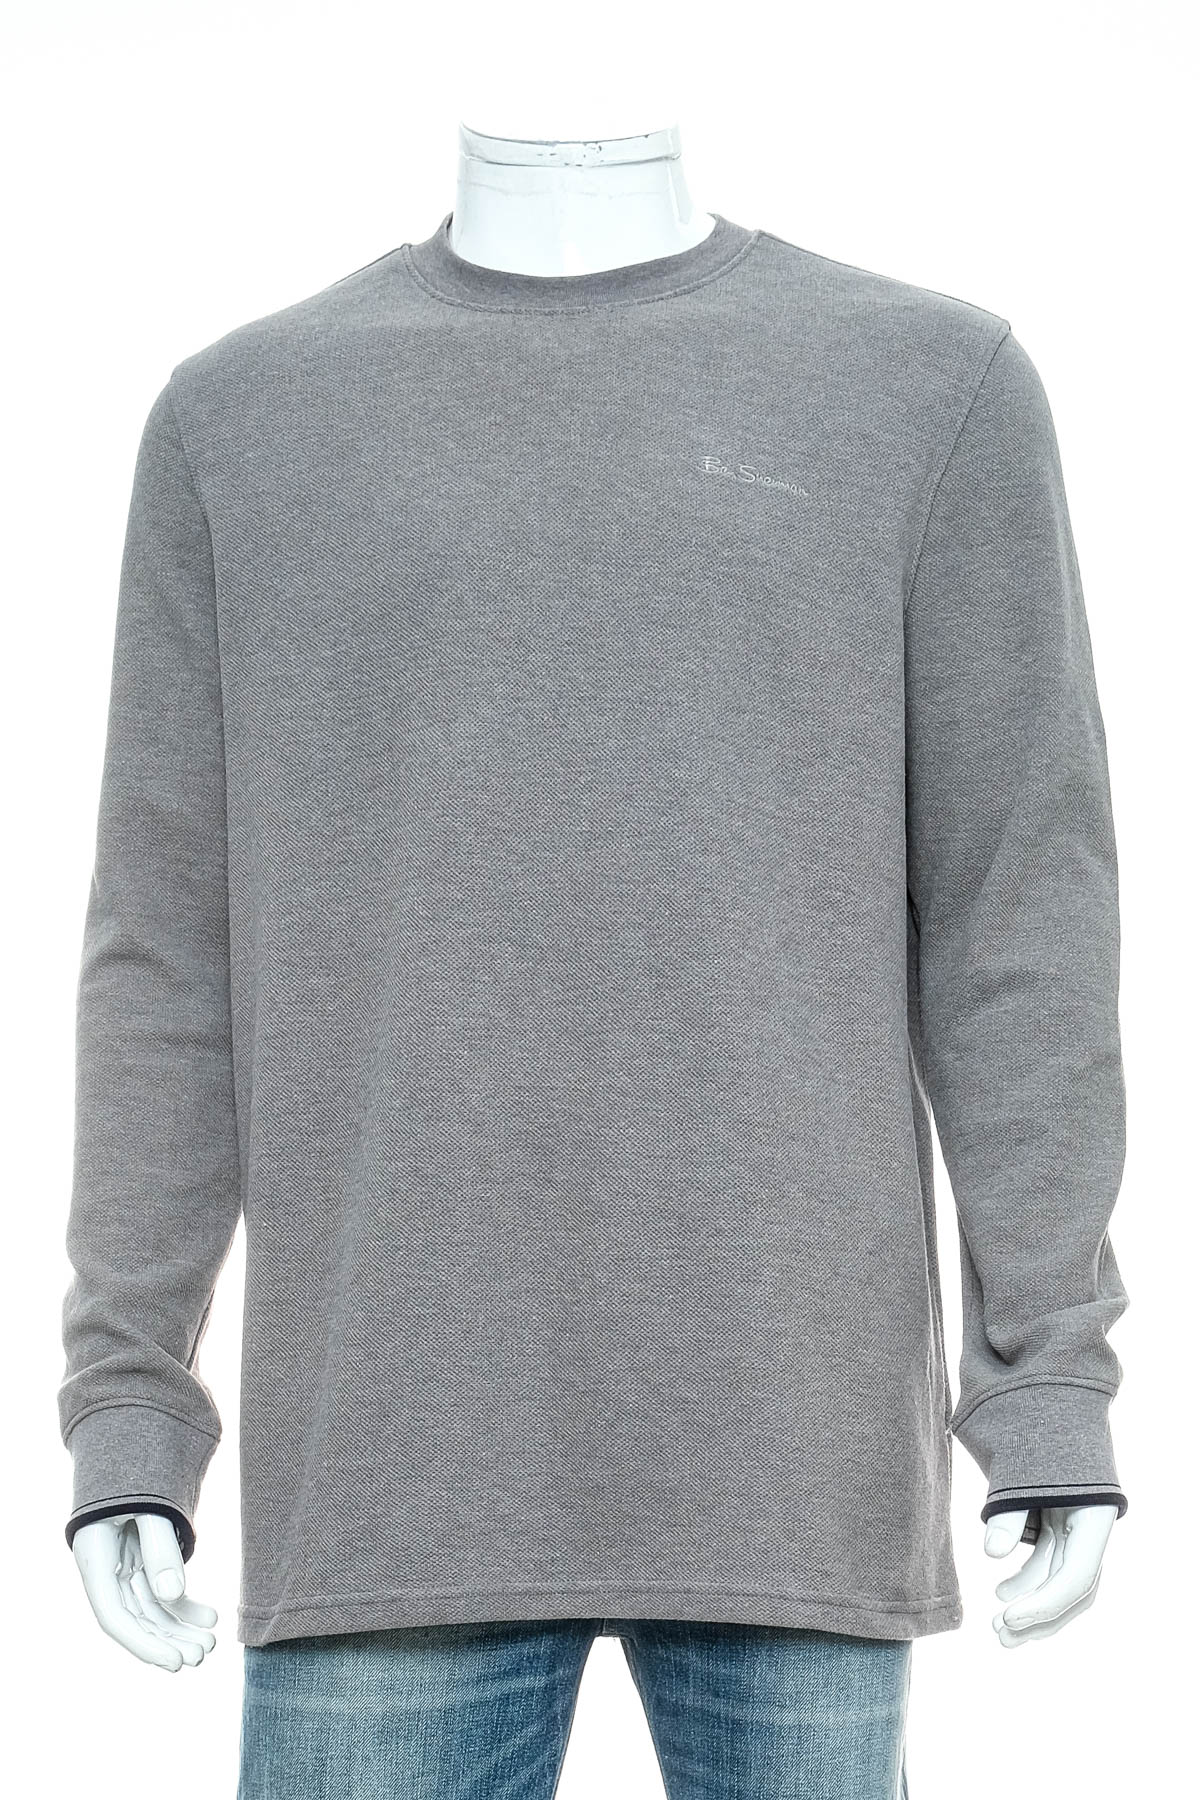 Men's sweater - Ben Sherman - 0